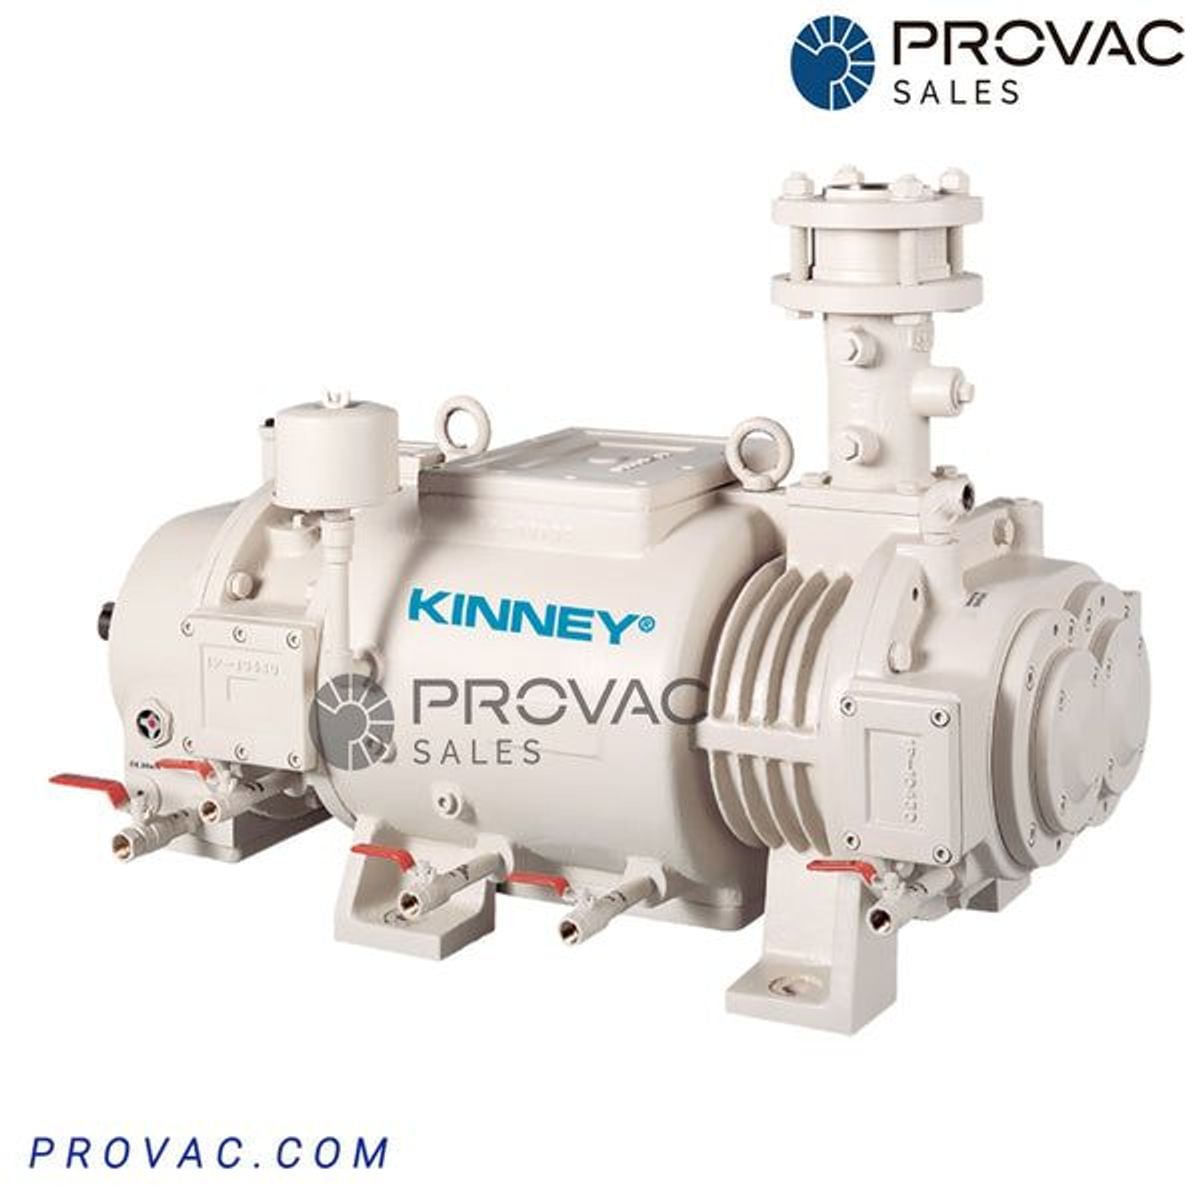 Kinney KDP 400 Dry Screw Vacuum Pump Image 1